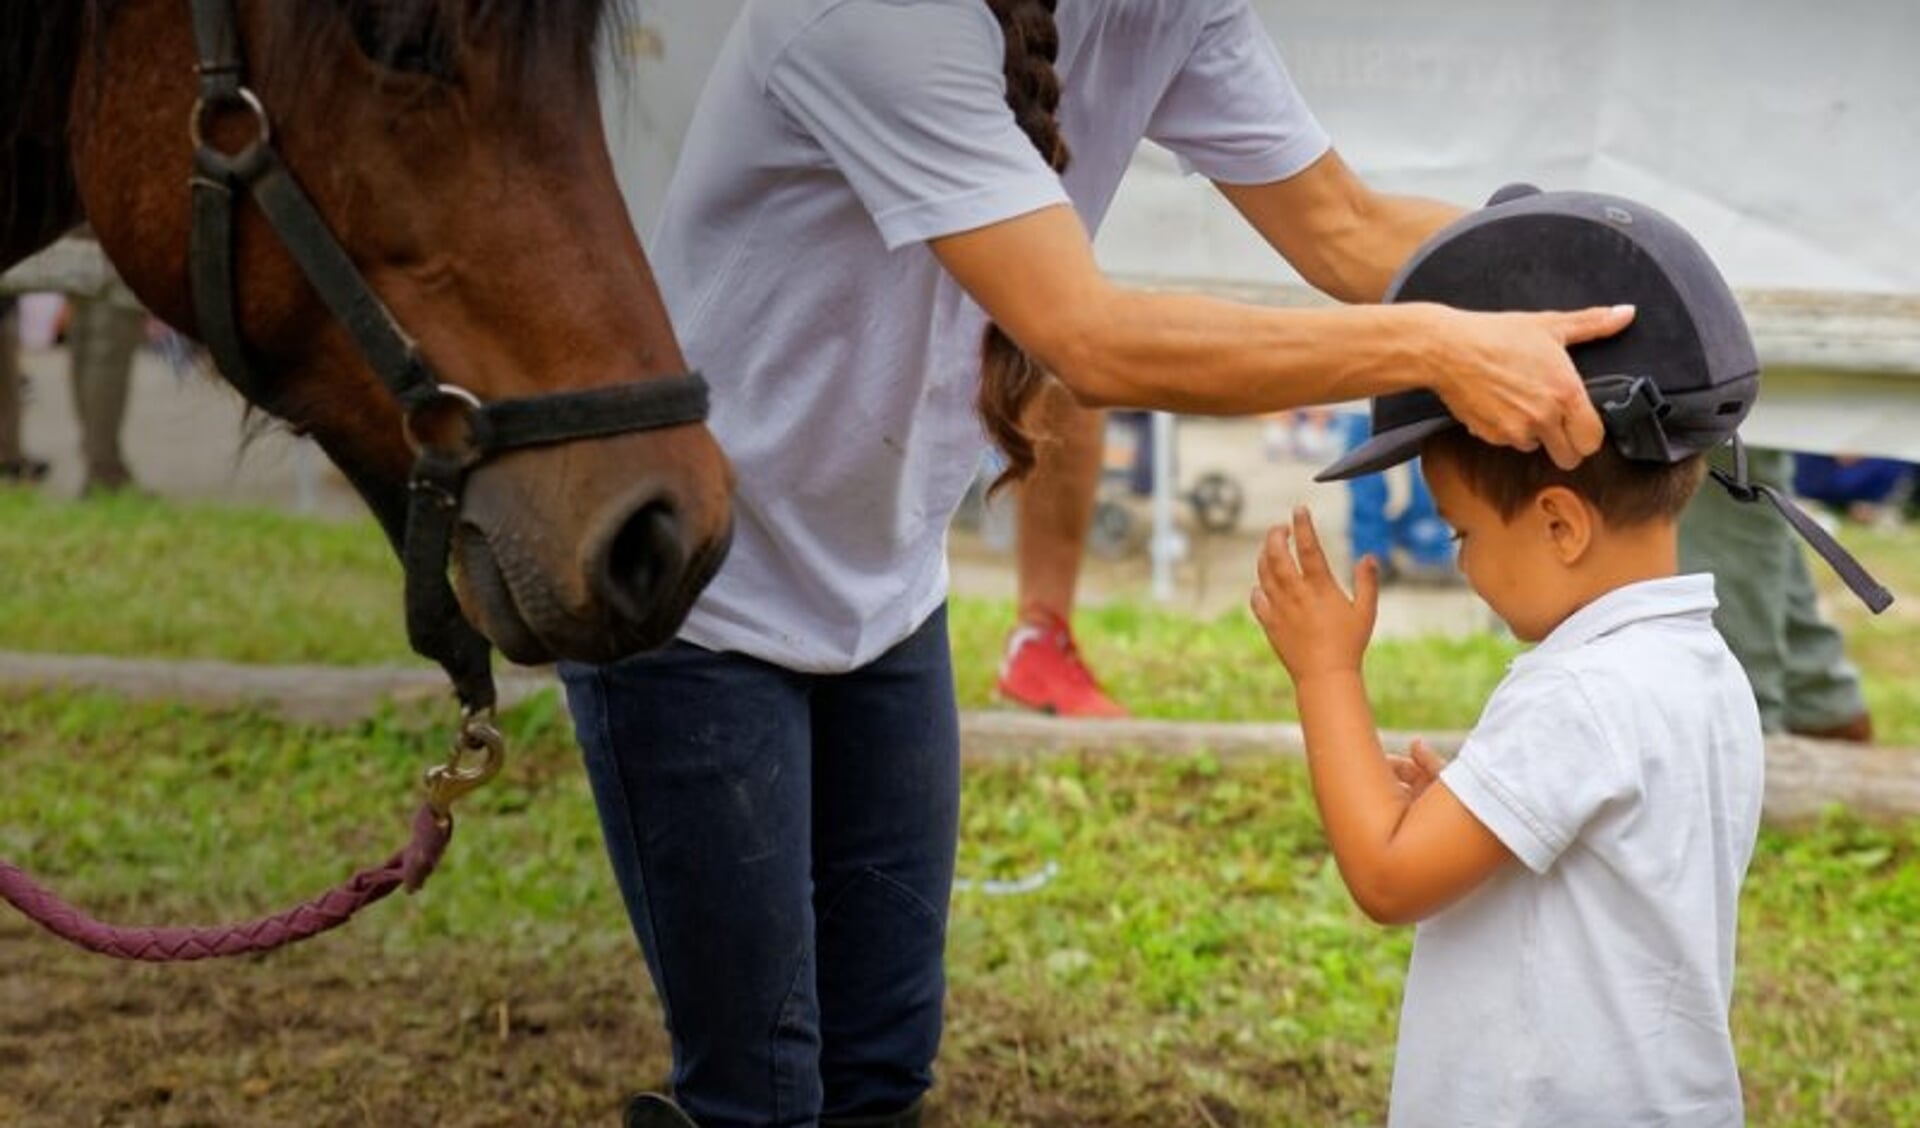 Werkwijze Postcode mannelijk Ook in omgang paard of pony: kinderen altijd een cap! | Het onafhankelijke  paarden(sport)medium